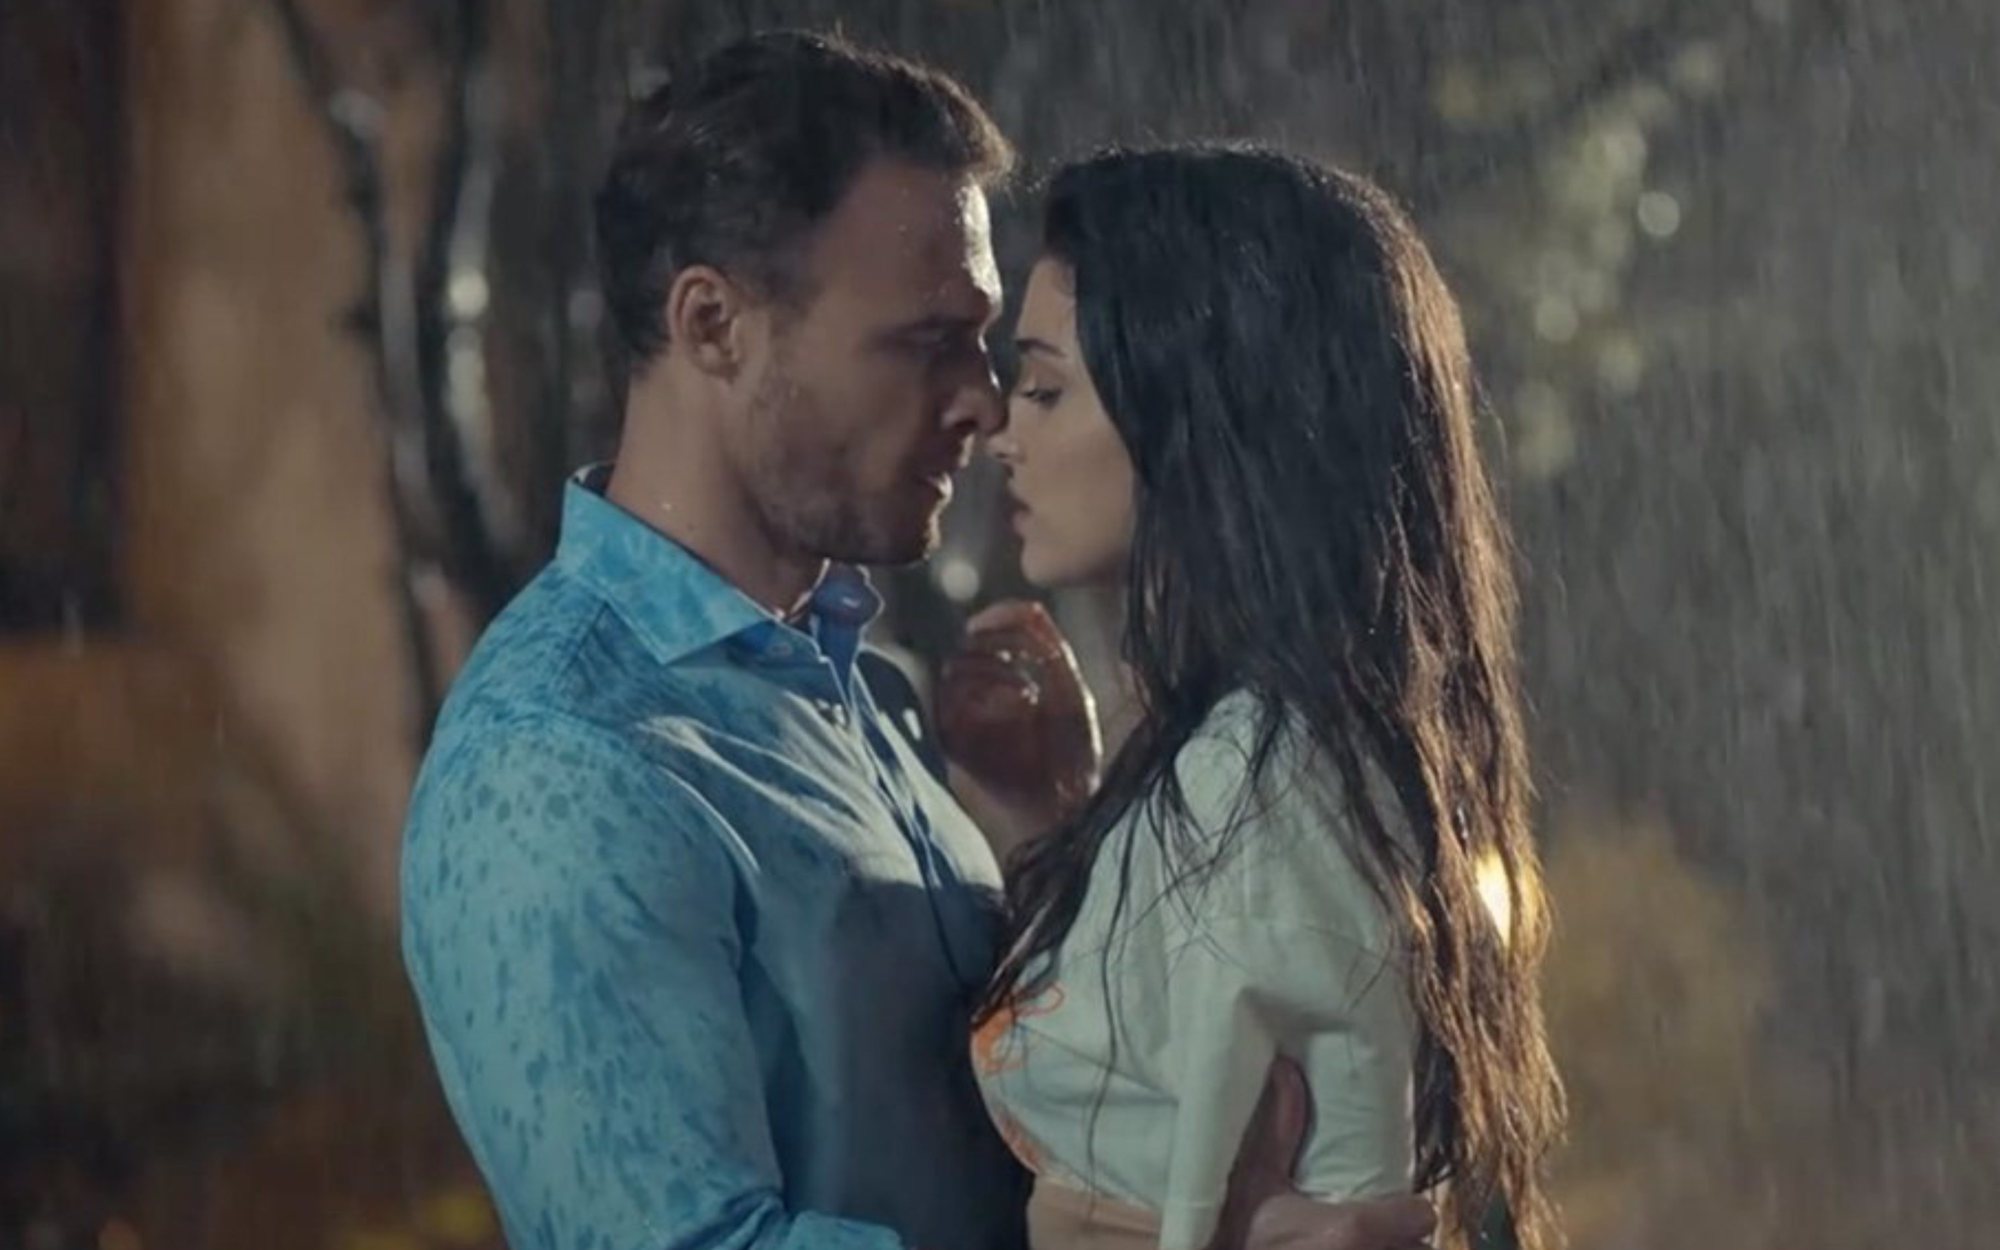 Turquía sanciona 'Love is in the air' por contener "escenas eróticas" que perjudican "los valores morales"